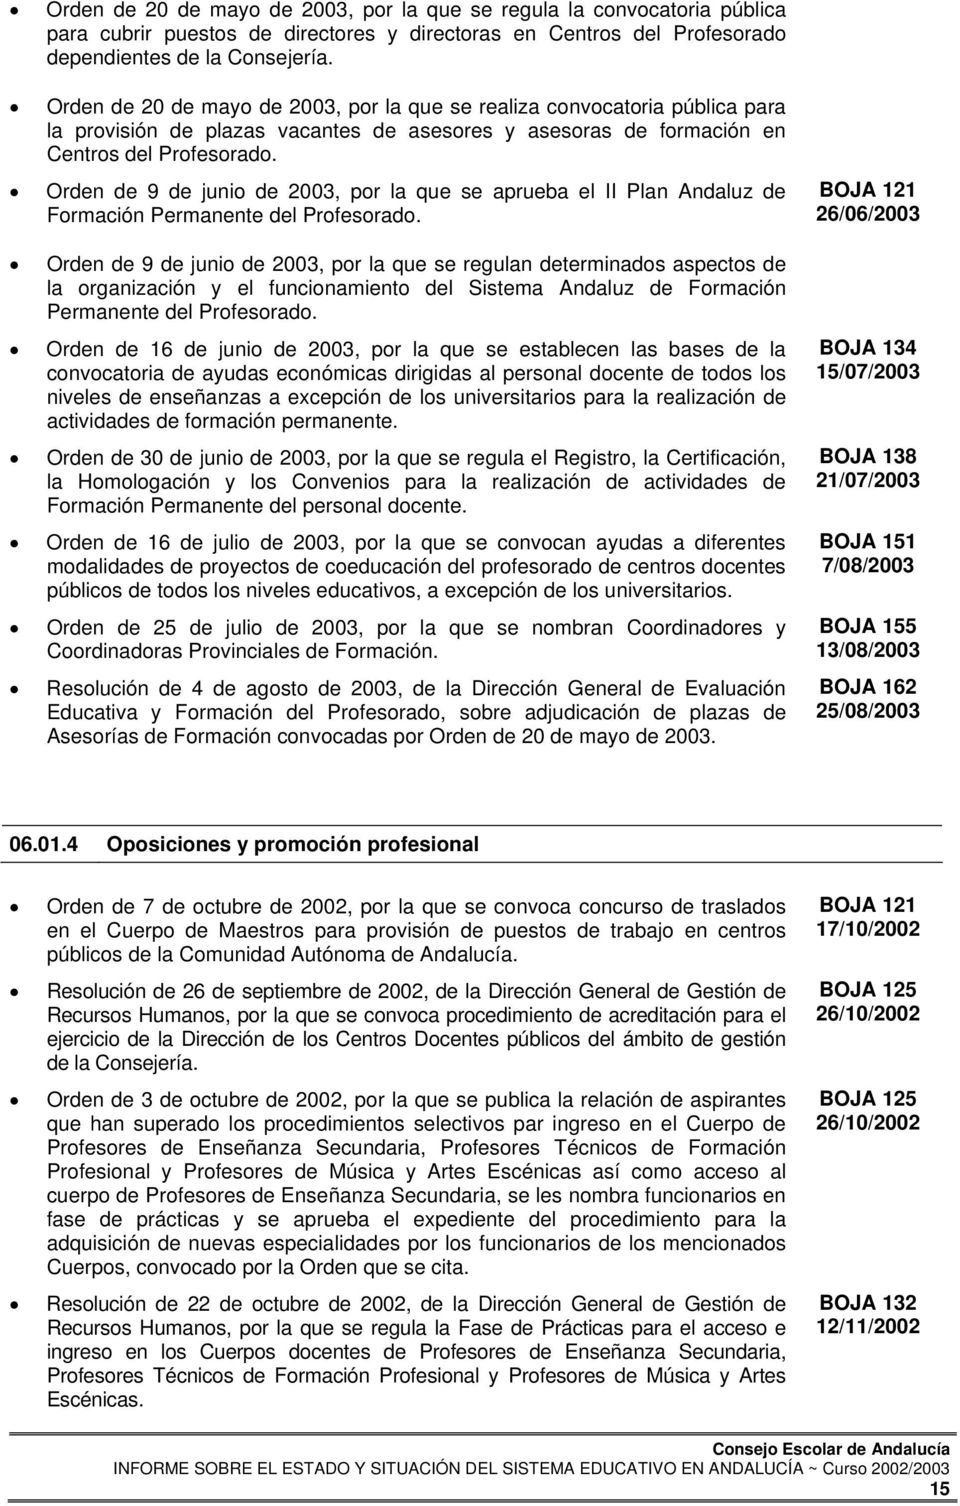 Orden de 9 de junio de 2003, por la que se aprueba el II Plan Andaluz de Formación Permanente del Profesorado.